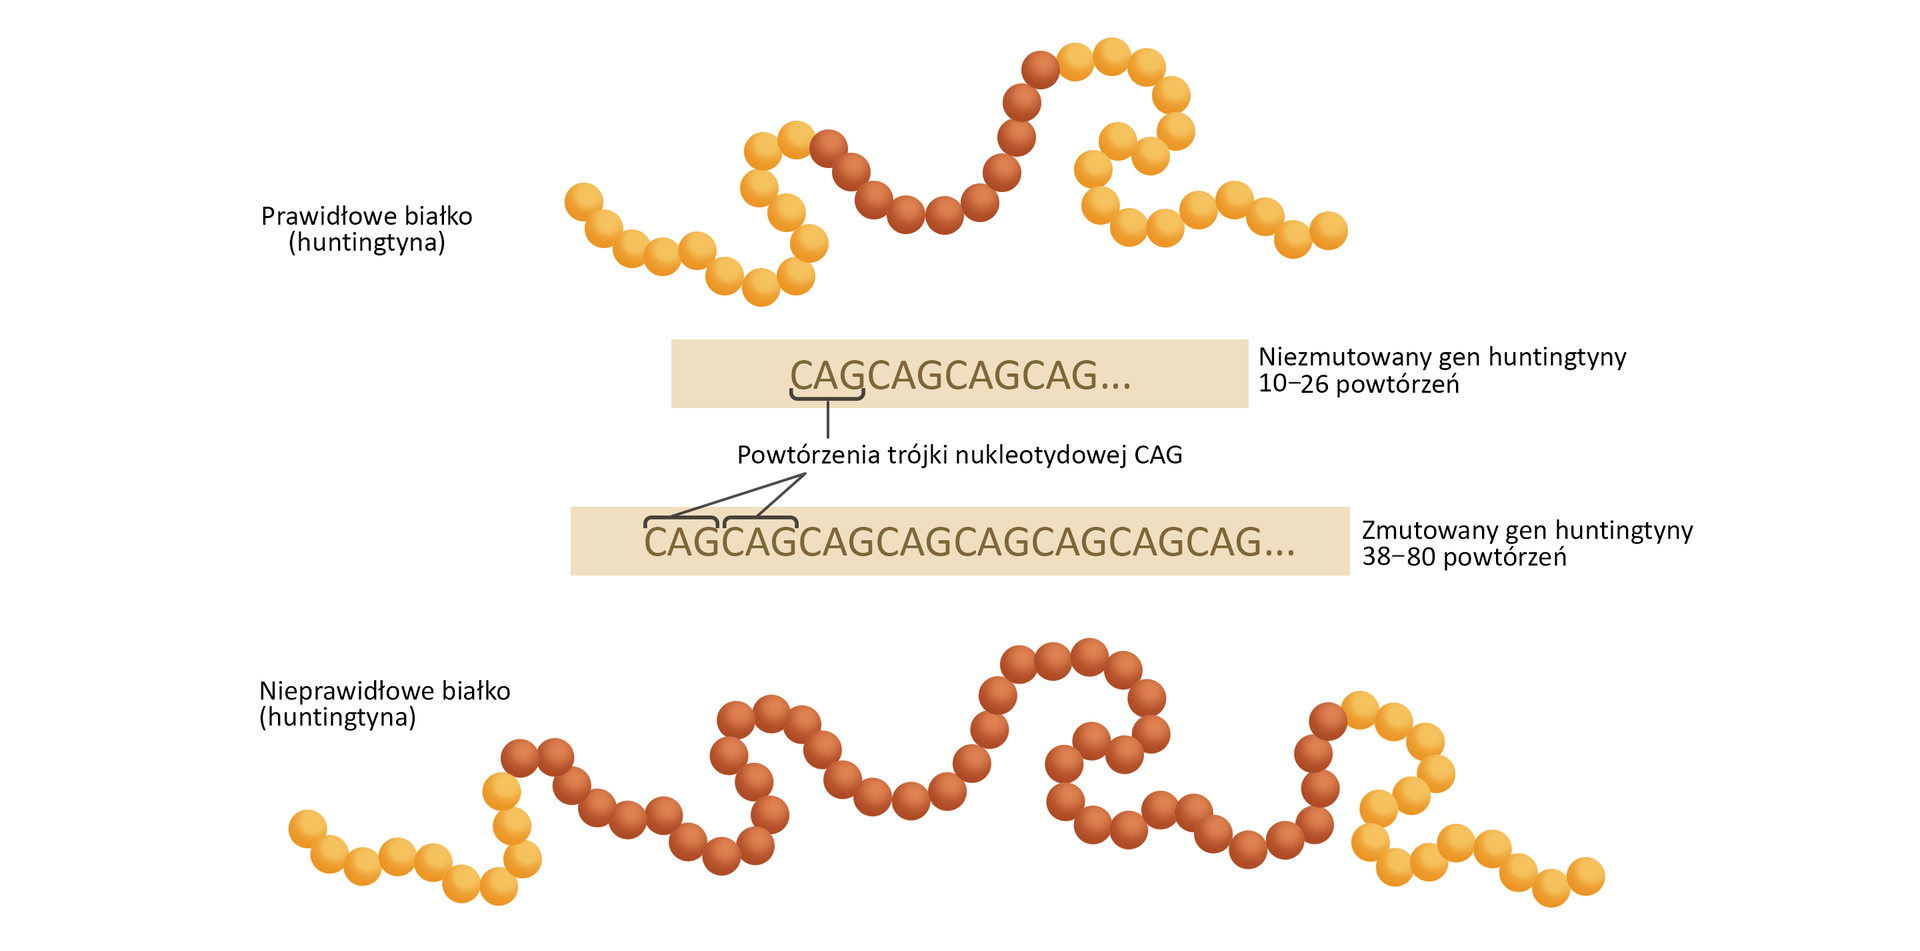 Schemat przedstawia prawidłowe i nieprawidłowe białko (huntingtynę), w którym mutacja genu IT‑15 powoduje chorobę Huntingtona.  Prawidłowe białko wygląda jak sznur korali żółtych z obu boków i pomarańczowych pośrodku. Niezmutowany gen huntingtyny posiada 10-26 powtórzeń trójki nukleotydowej CAG. Zmutowany gen huntingtyny posiada z kolei 38-80 powtórzeń trójki nukleotydowej CAG. Tworzy białko wyglądające jak sznur korali z takim samym ciągiem elementów w kolorze żółtym, ale bardzo rozbudowanym ciągiem elementów pomarańczowych w środku sznura.  Skutkiem mutacji jest obecność białka o nieprawidłowej strukturze, które tworzy złogi między- i śródkomórkowe w neuronach. Odkładanie się nieprawidłowego białka powoduje obumieranie komórek nerwowych.